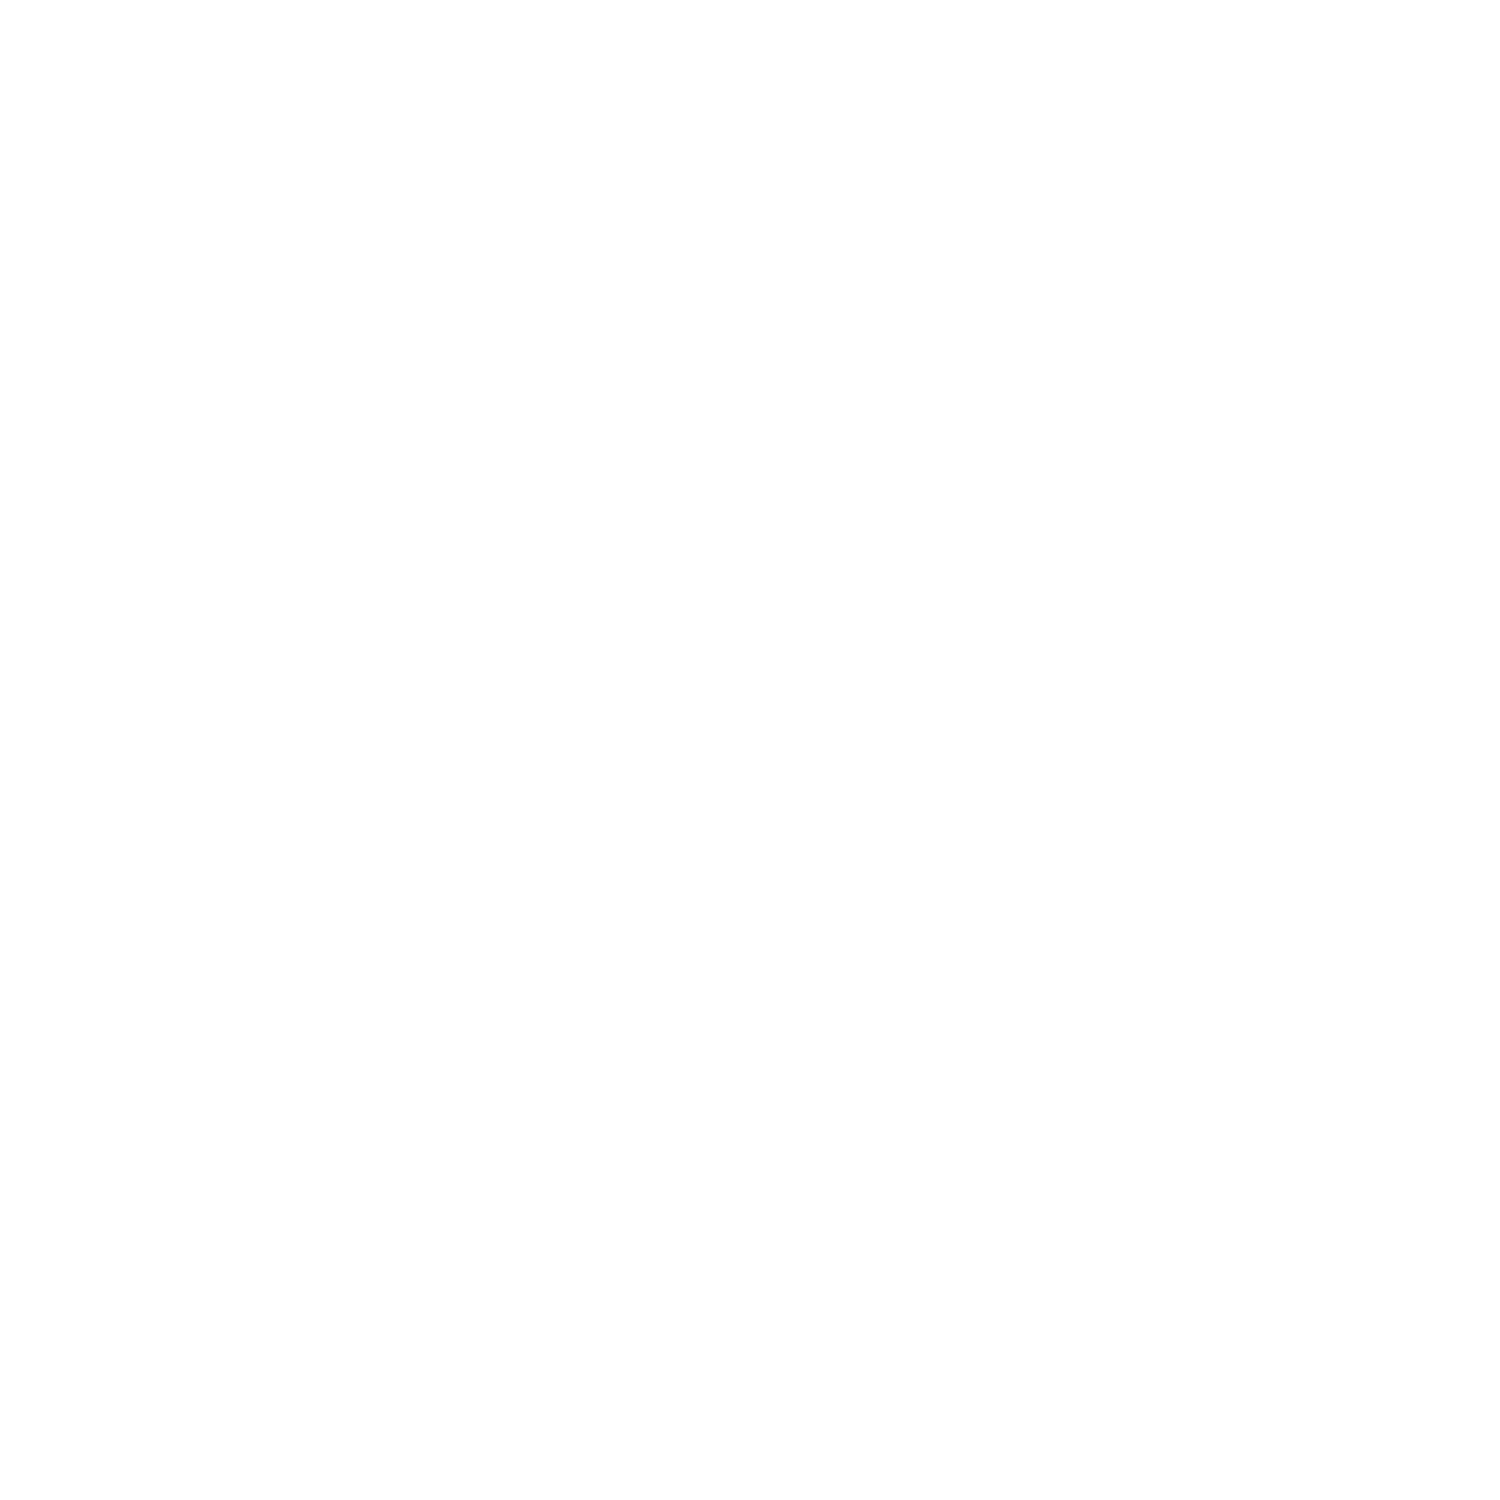 LVTHN